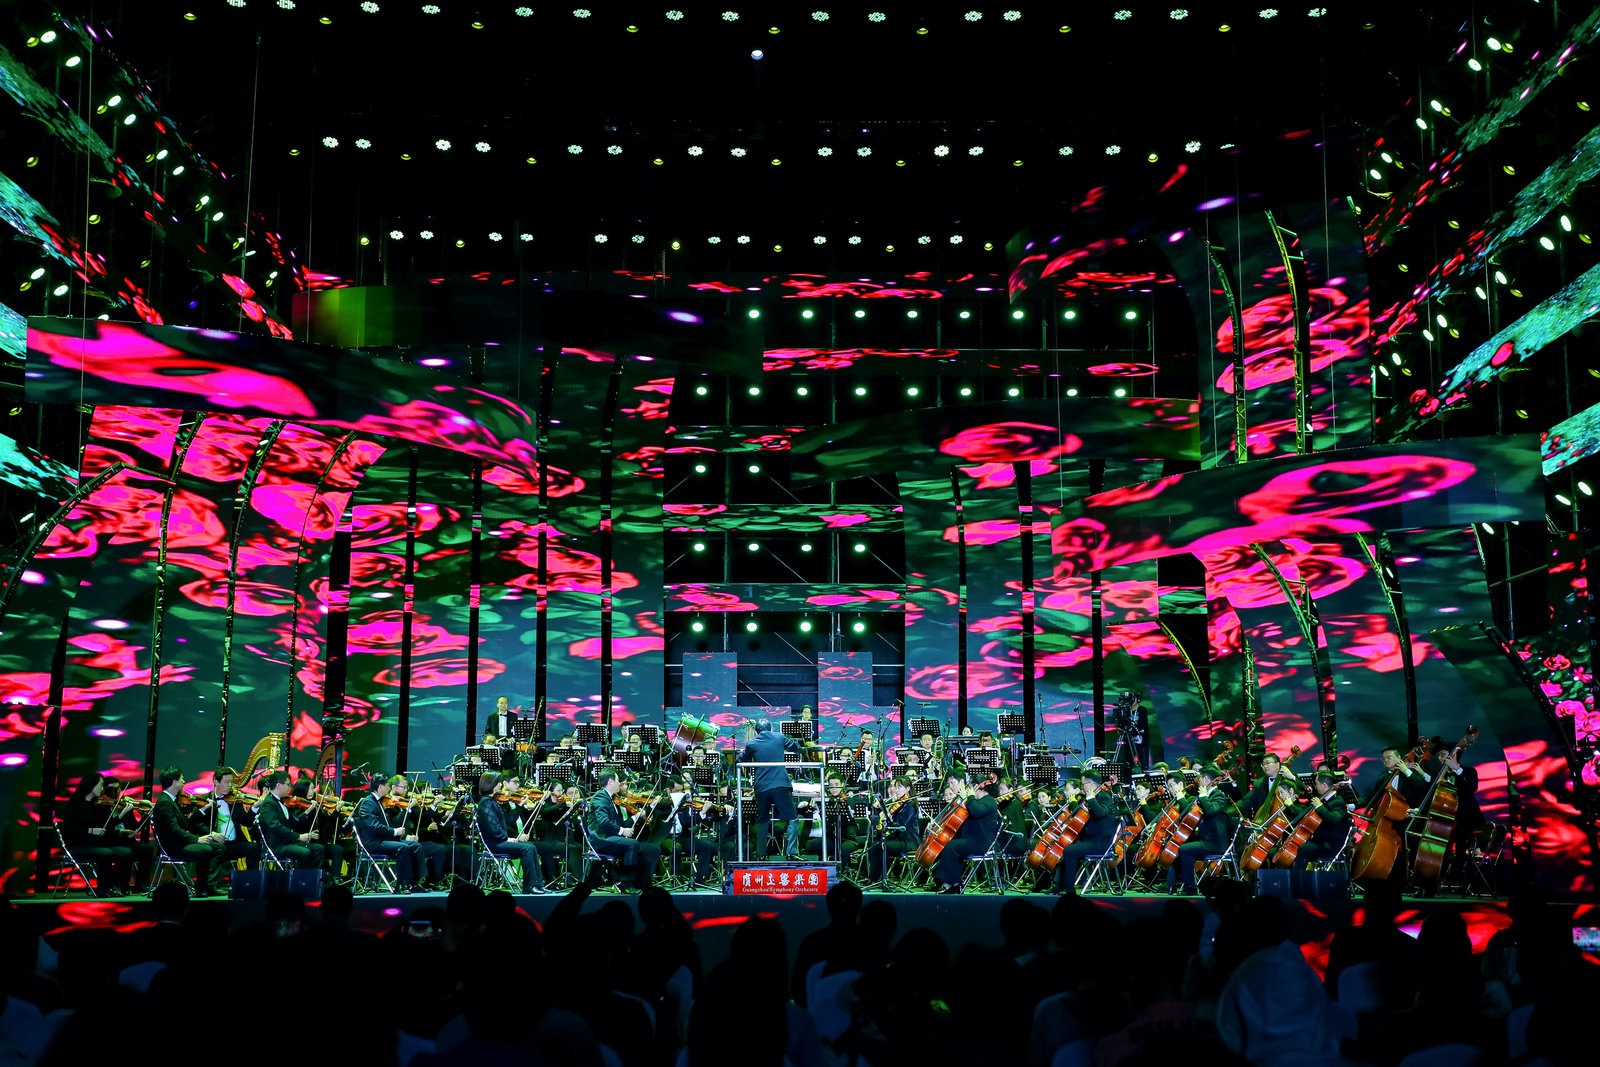 梧桐山音樂會為廣大市民游客帶來一場花海與音樂相得益彰的視聽盛宴。主辦方供圖